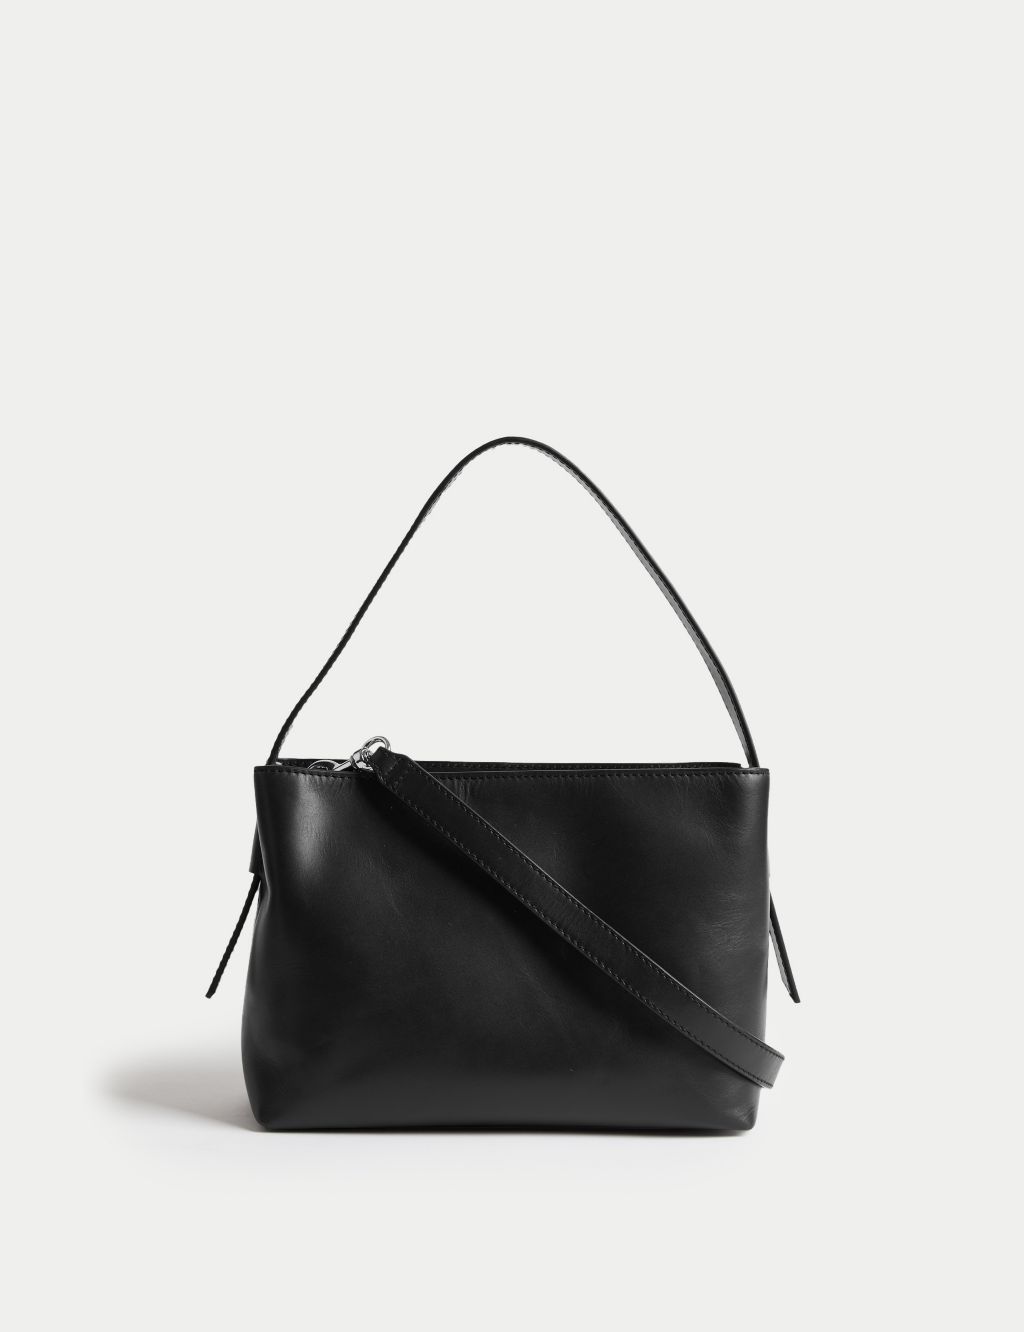 Leather Top Handle Shoulder Bag image 1